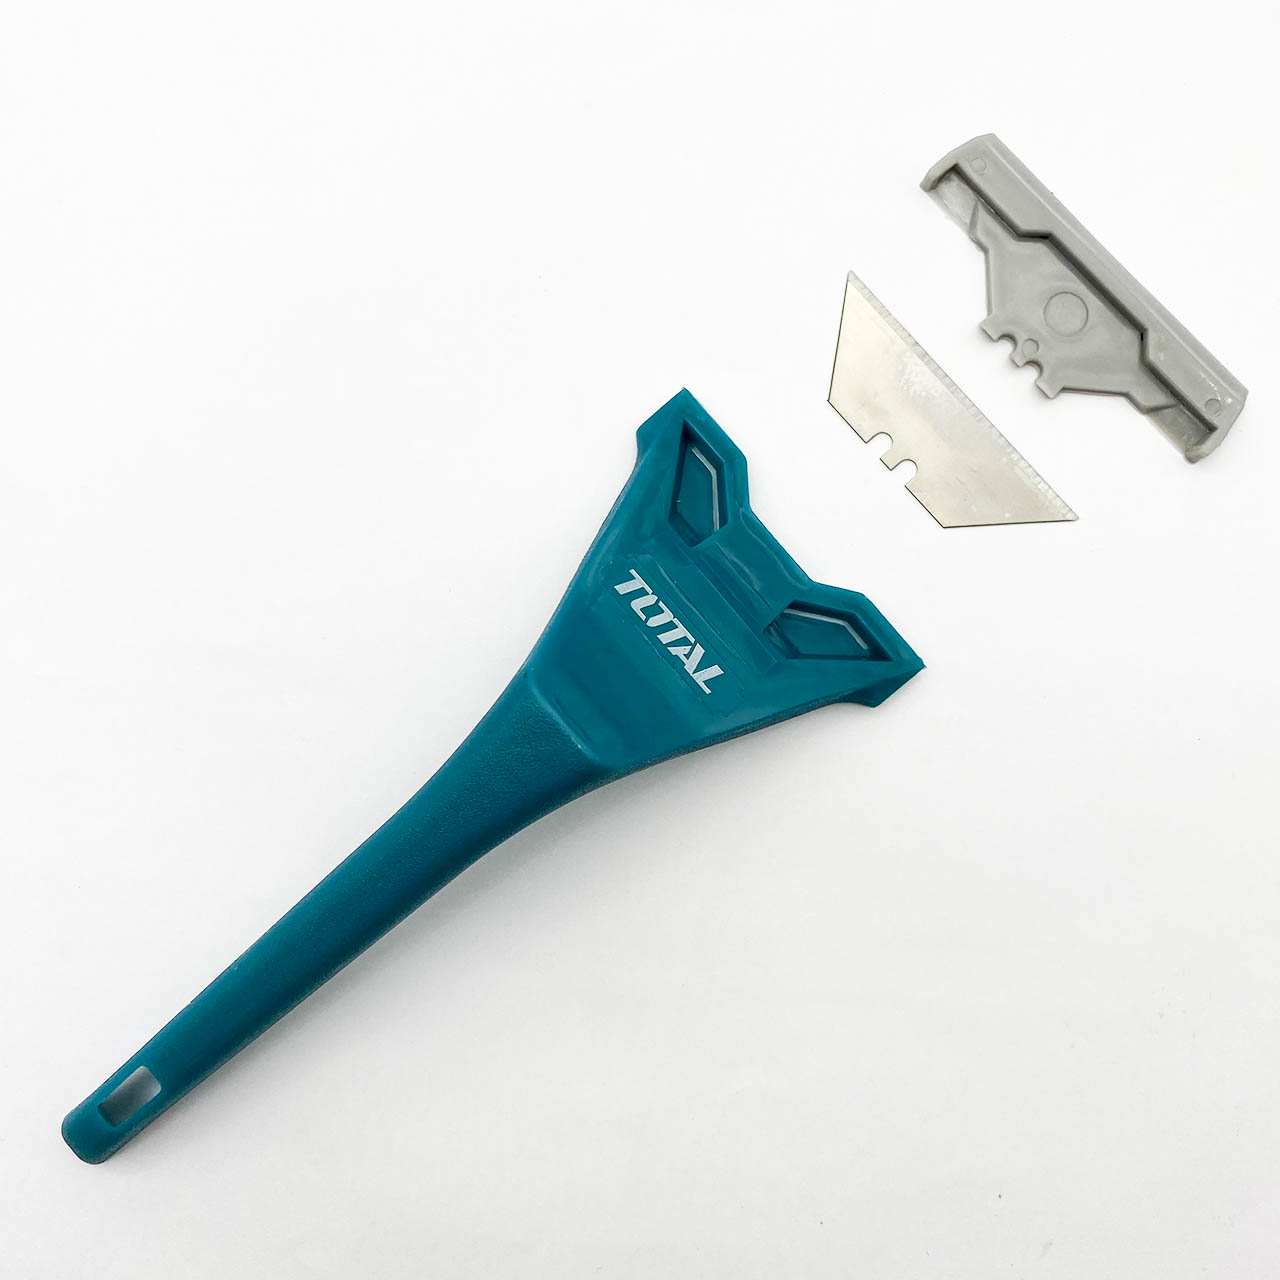 Cơ chế thay thế lưỡi dao rất đơn giản và dễ dàng